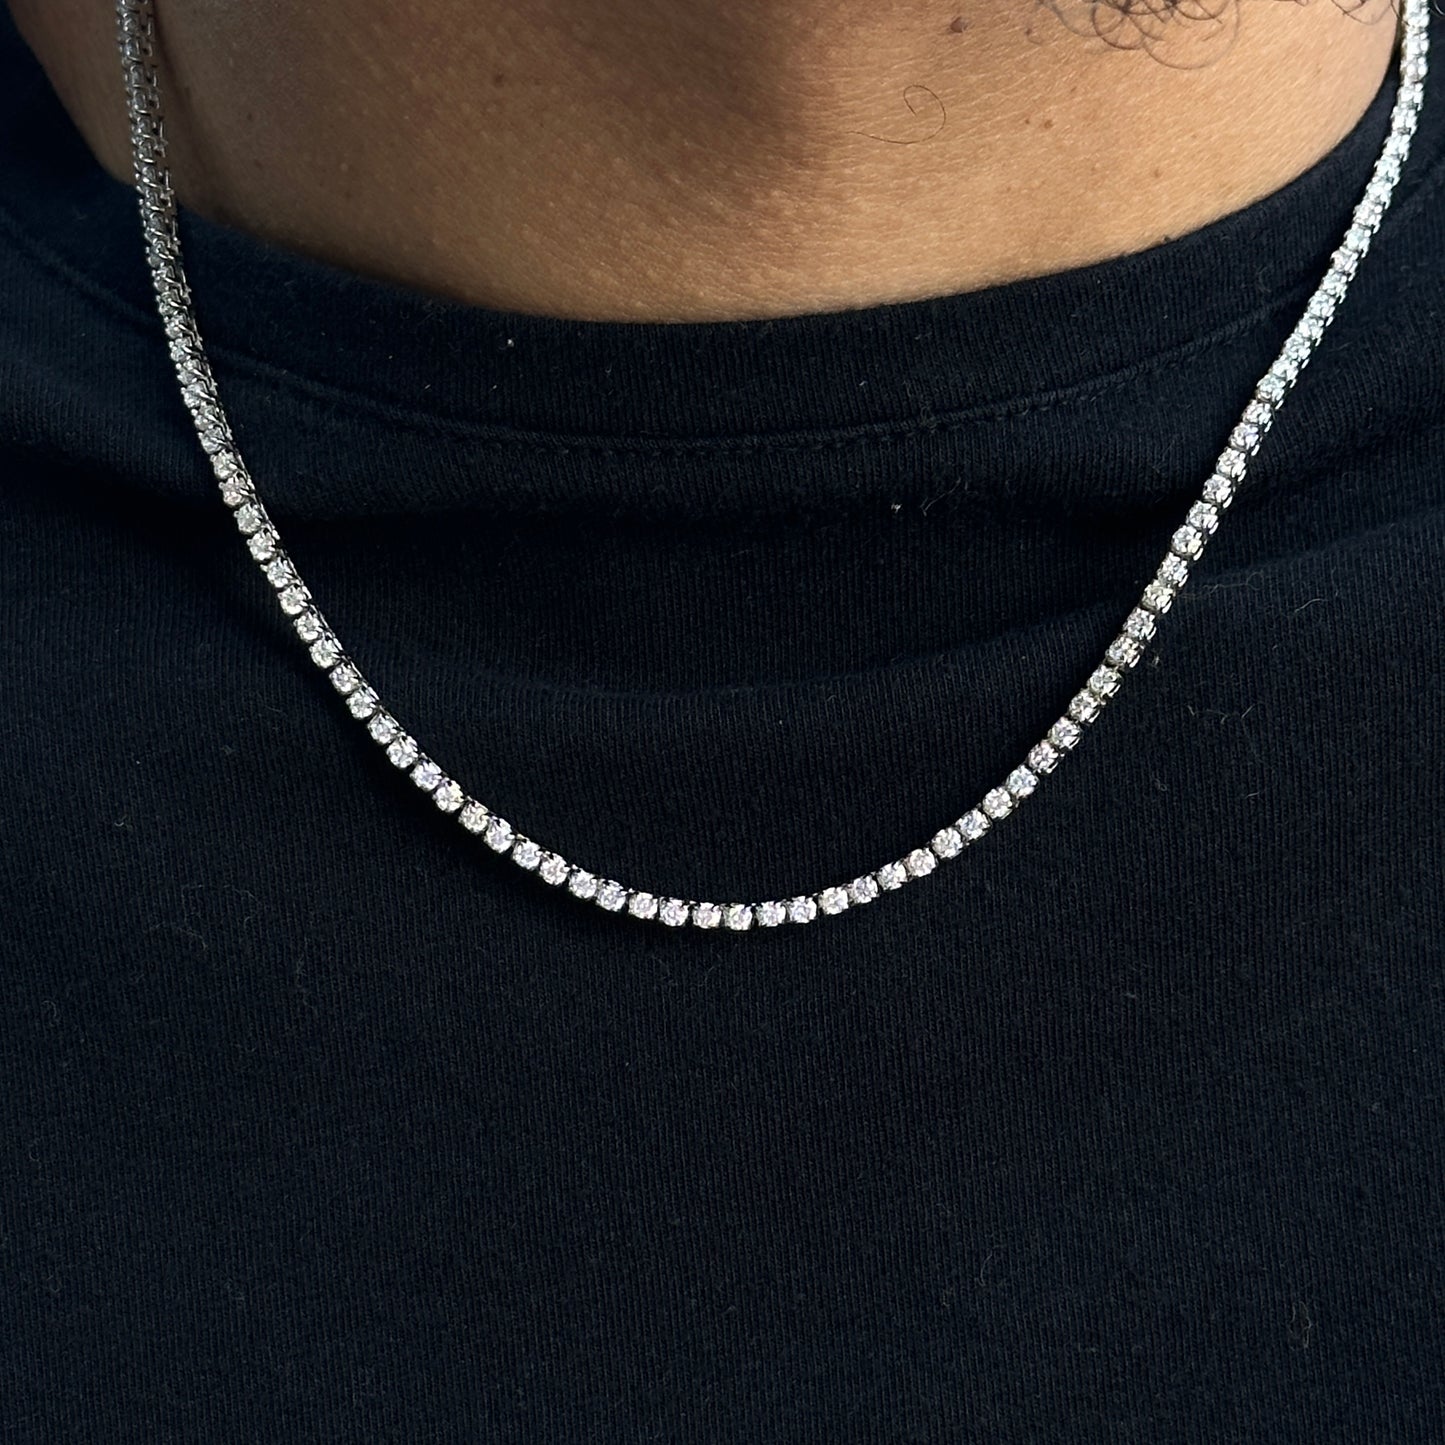 6ct+ Lab Grown Diamond Tennis Necklace